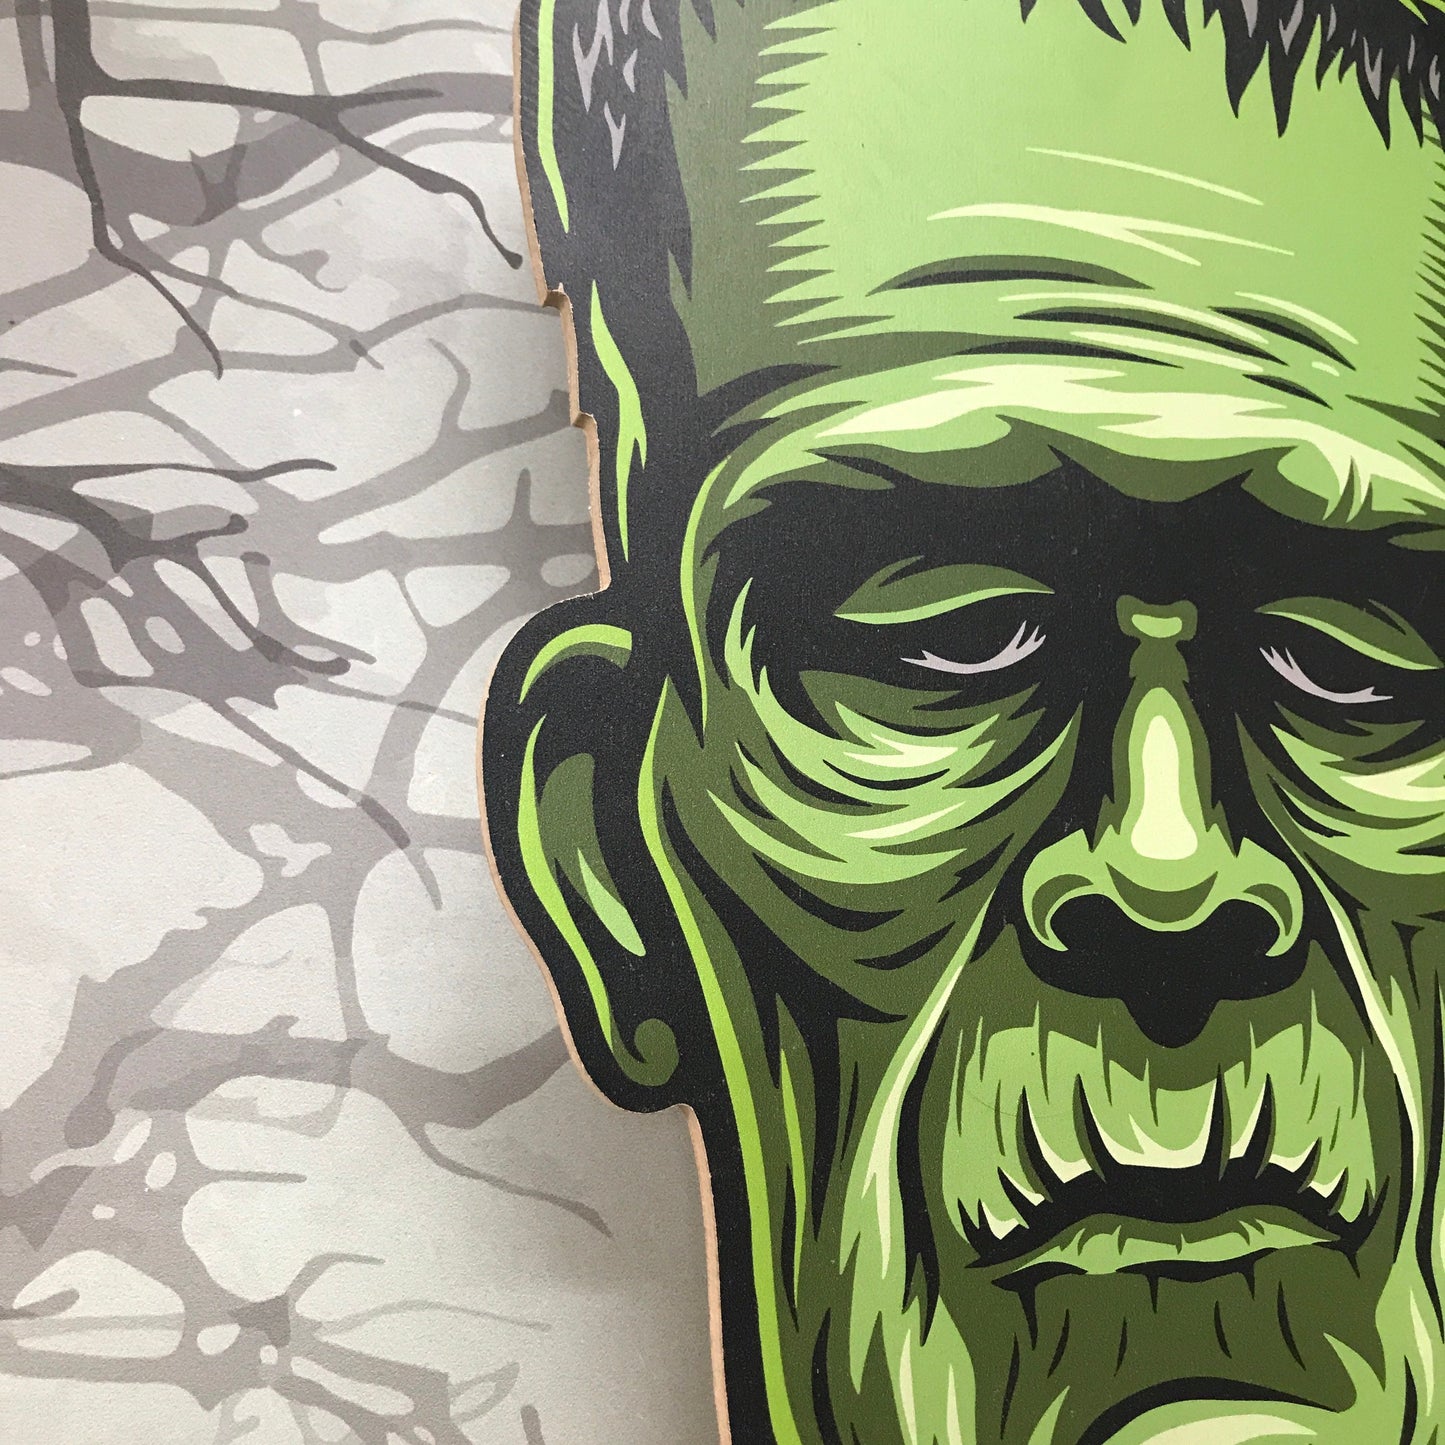 Frankenstein's Monster Head